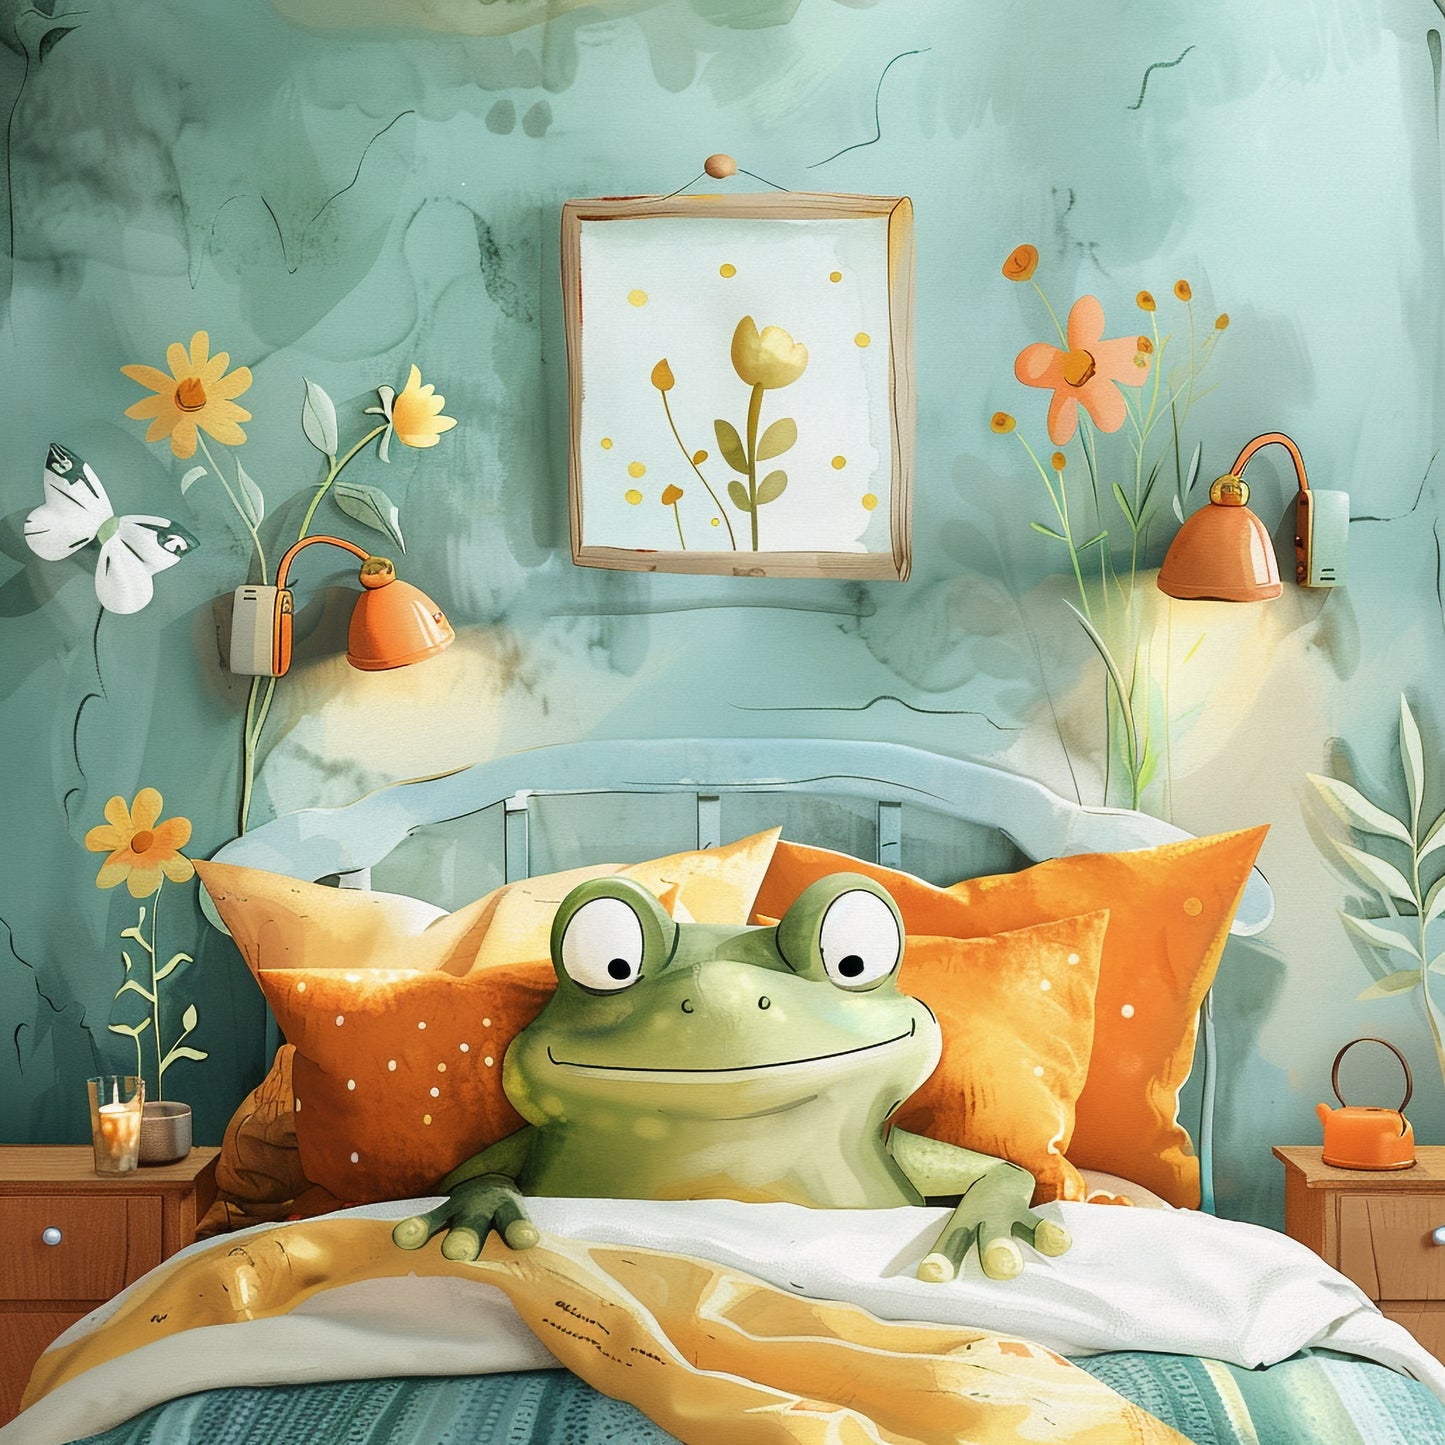 Cute Frog Enjoying Cozy Evening in Stylish Bedroom